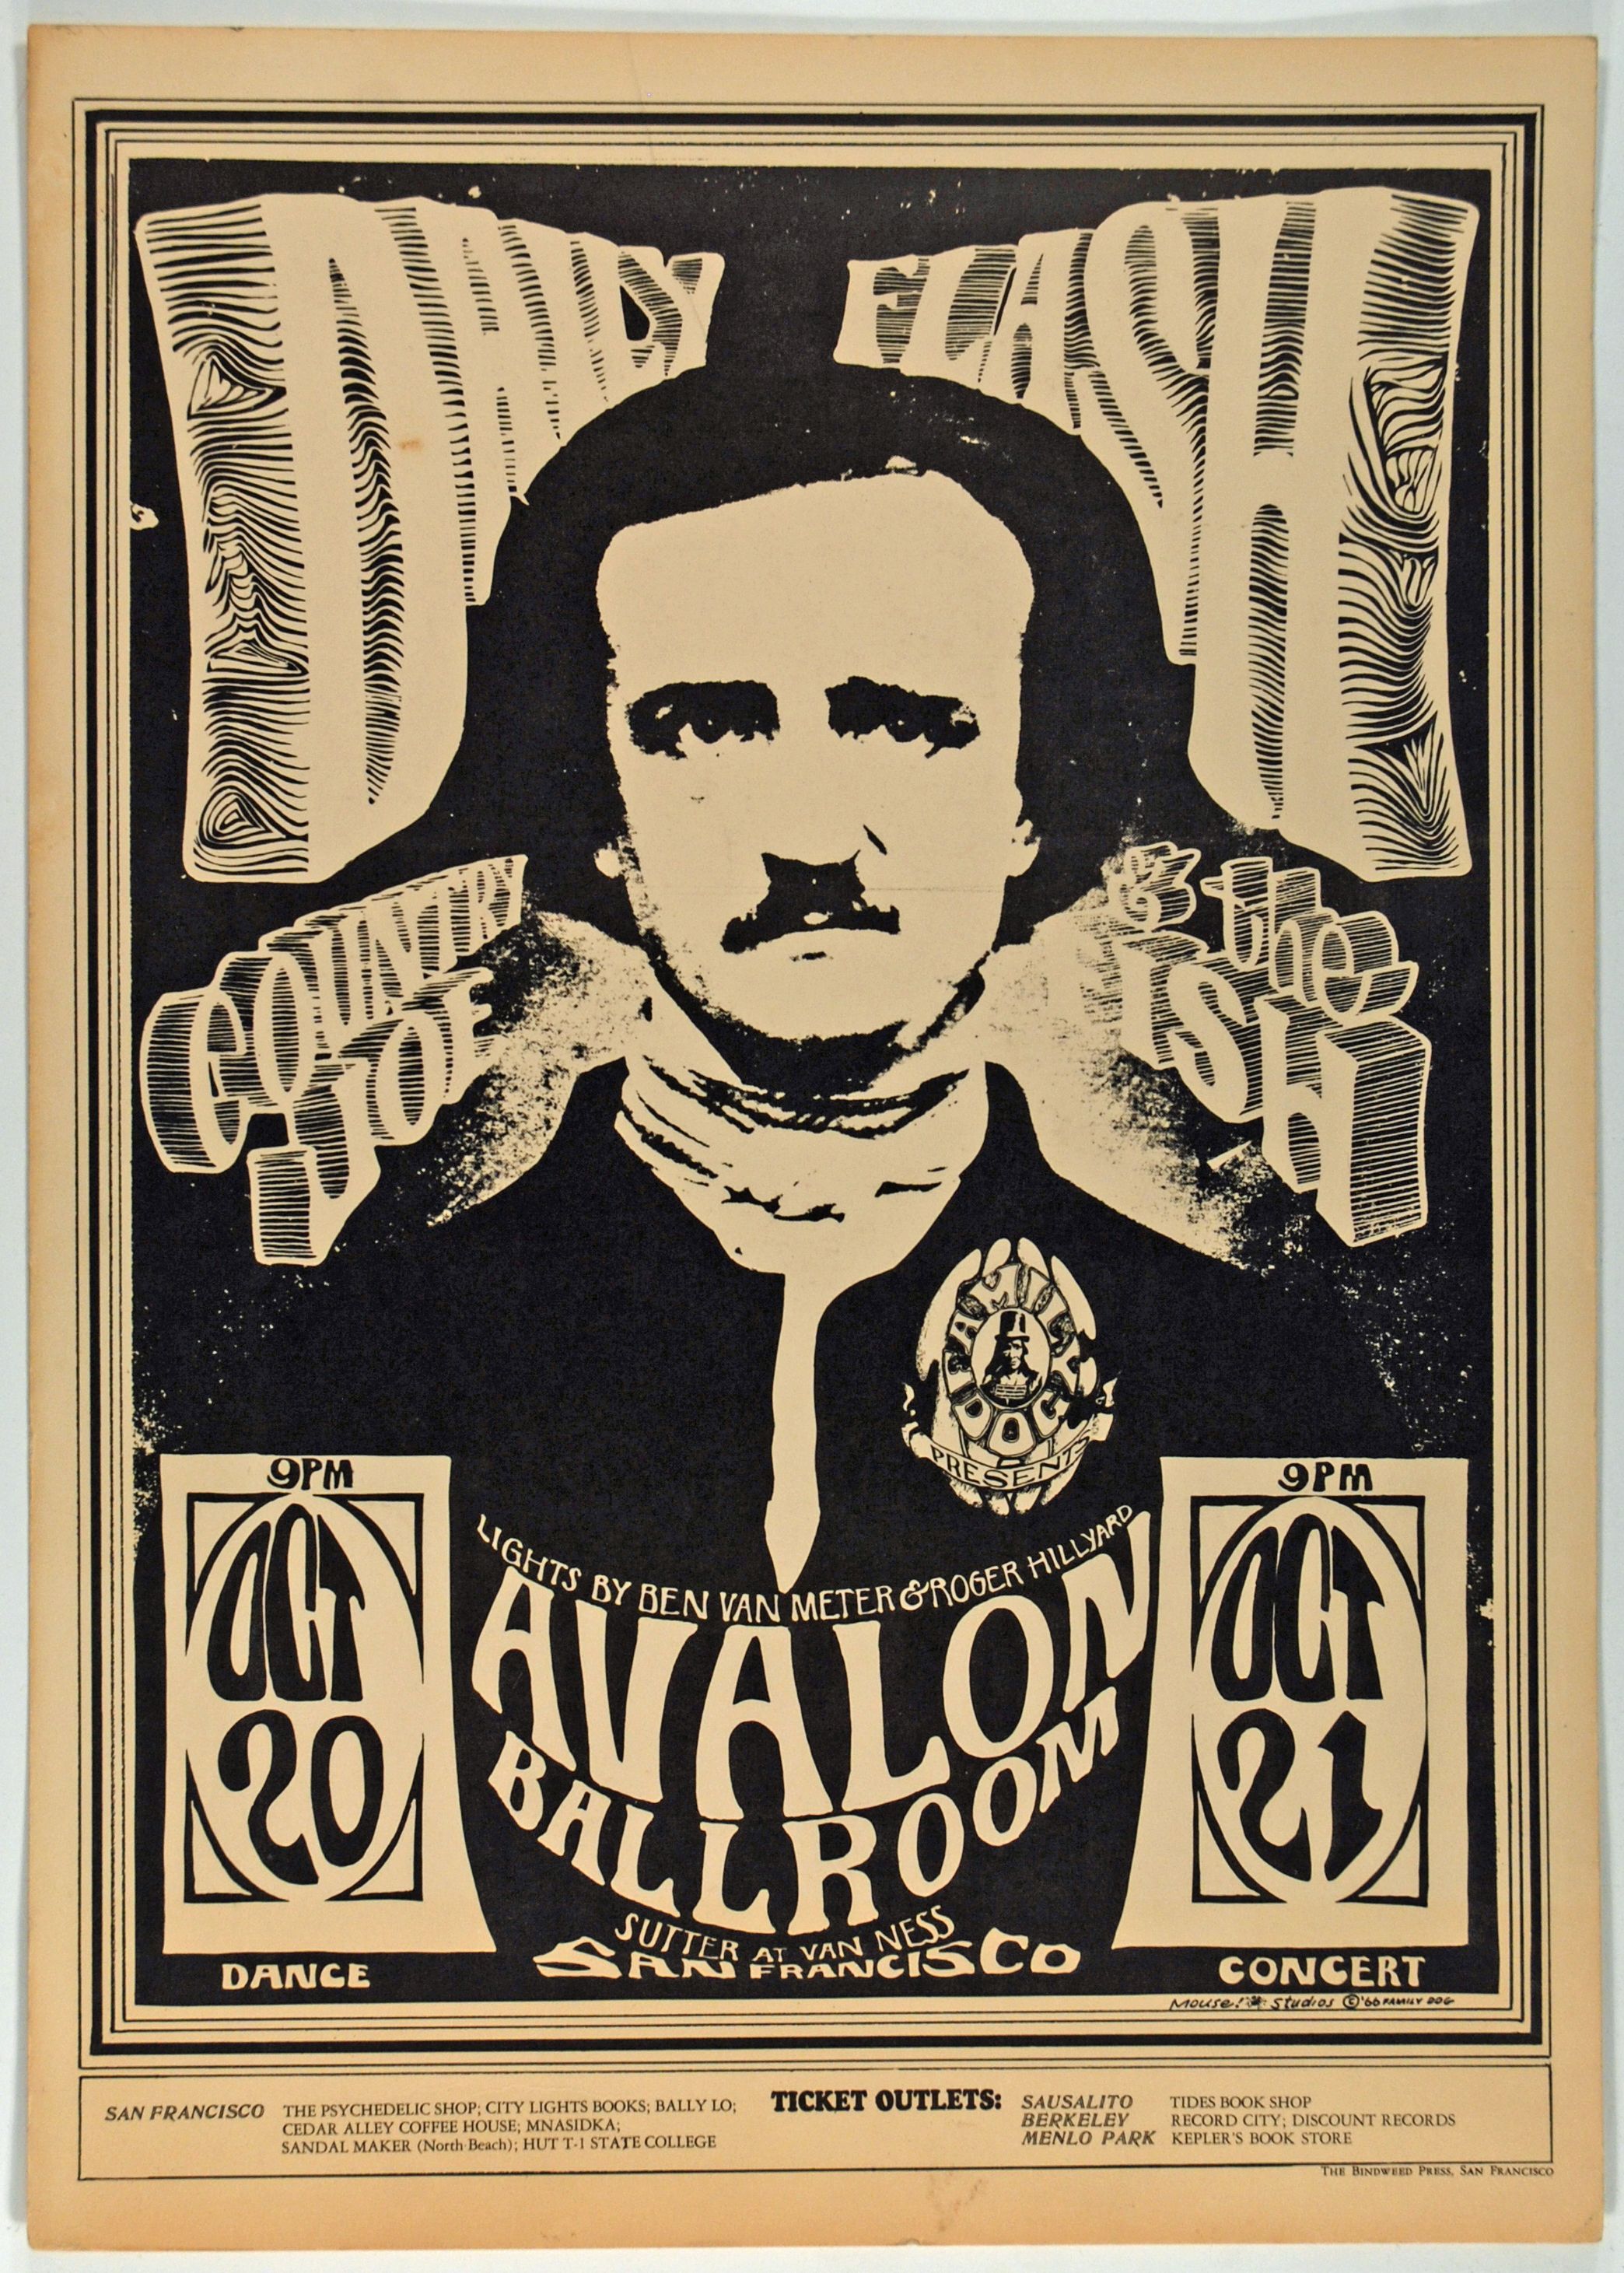 FD-31-OP-1 Concert Poster